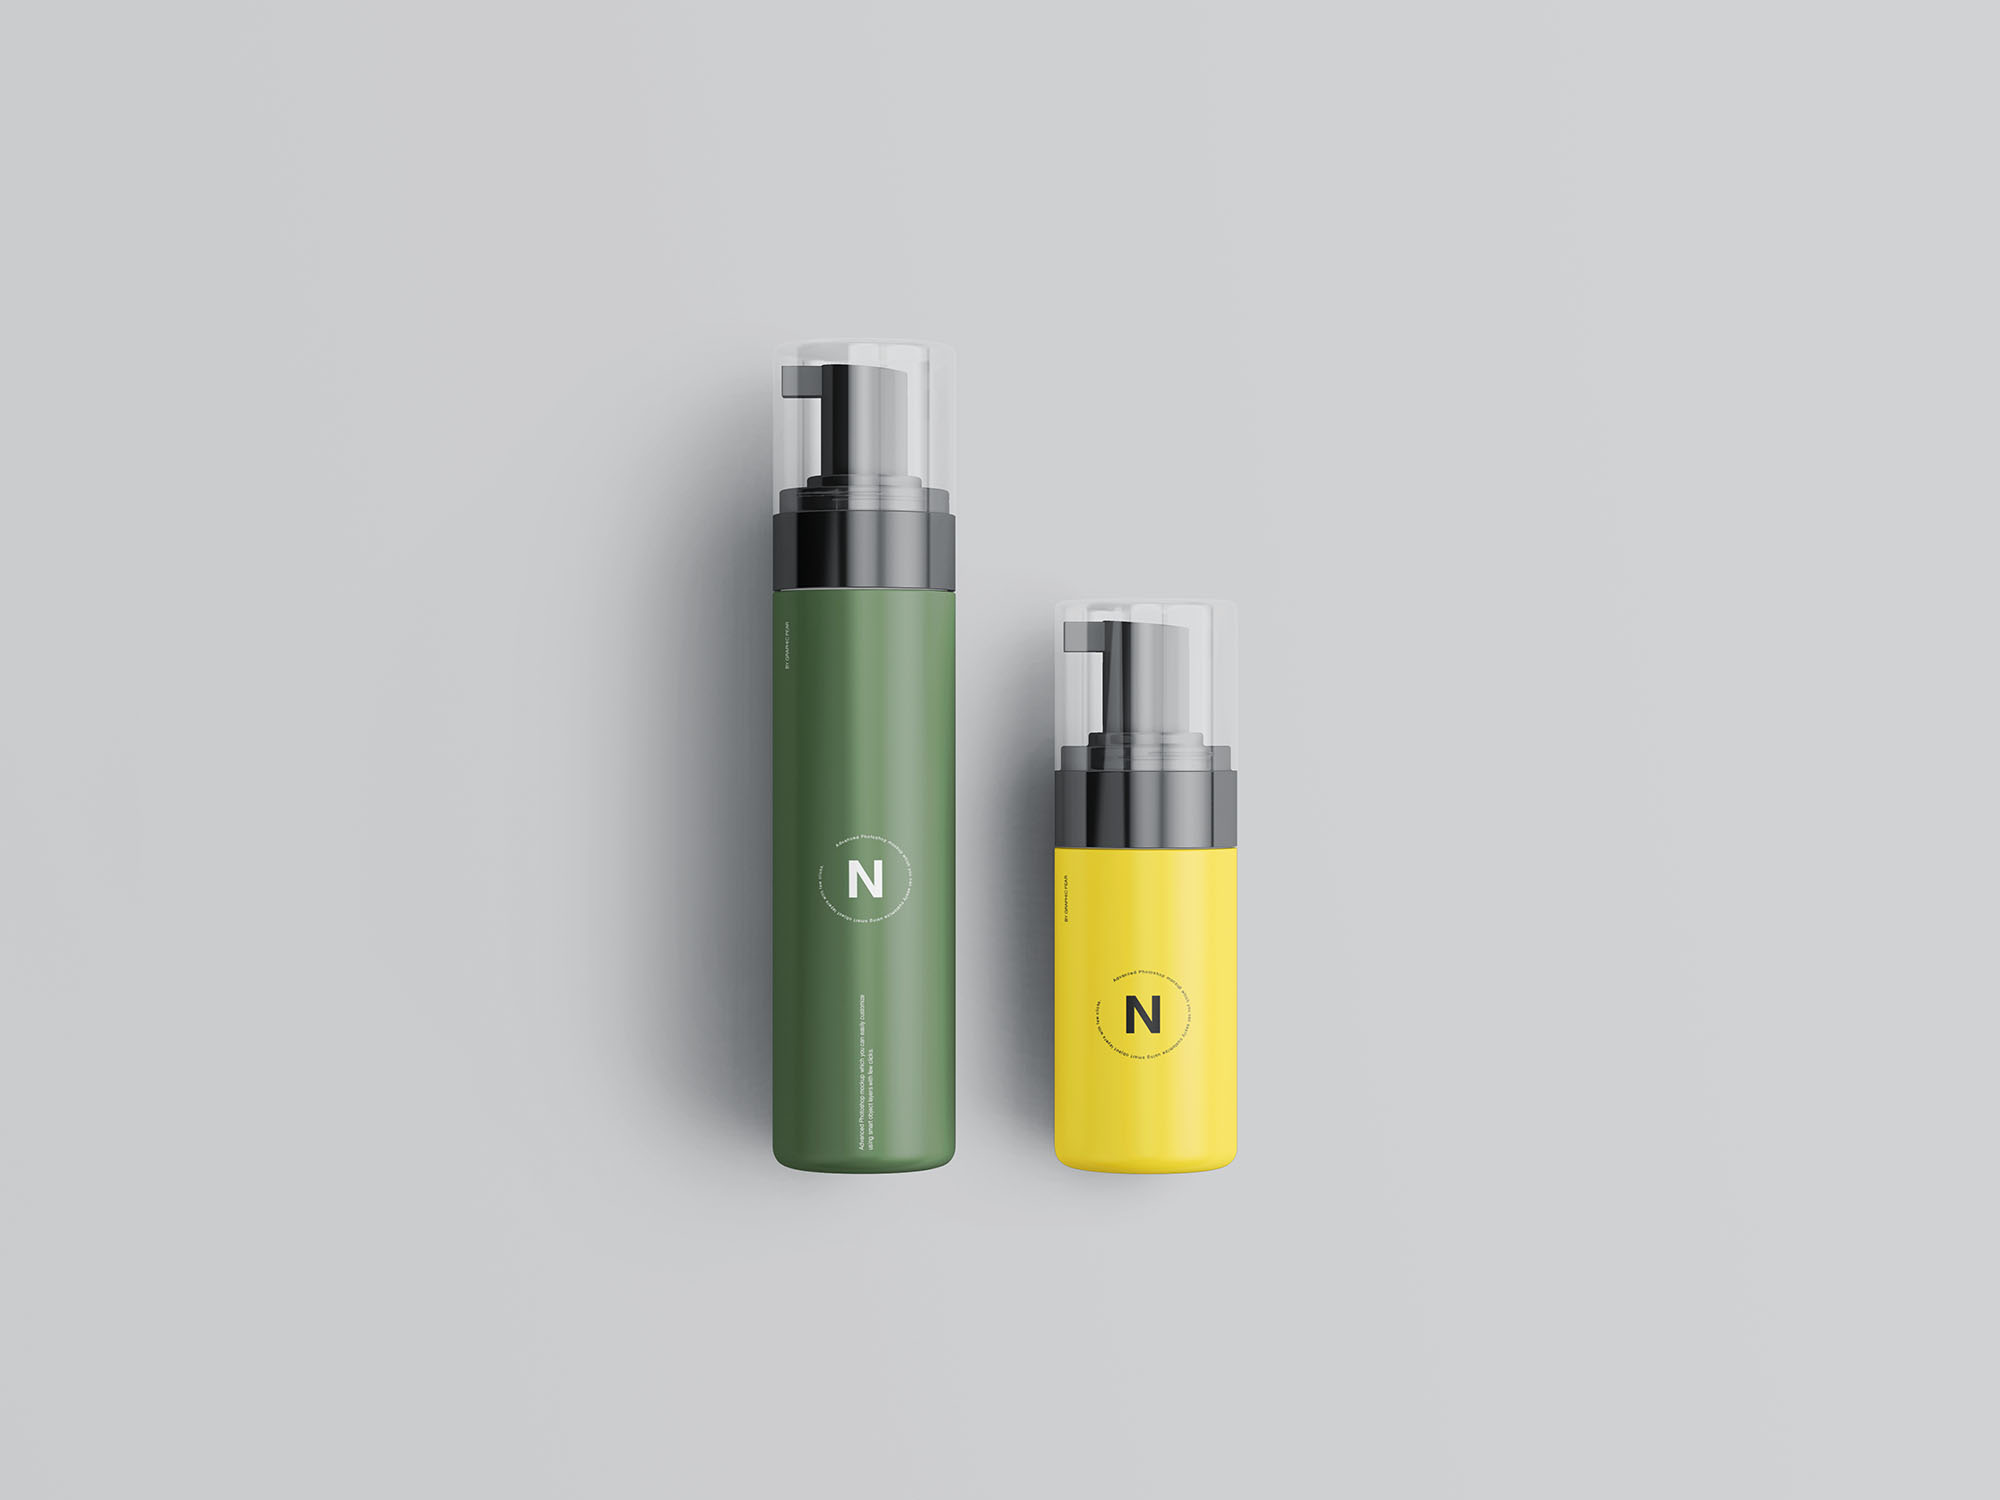 按压式化妆品护肤品瓶外观设计16设计网精选模板 Cosmetic Bottles Packaging Mockup插图(7)